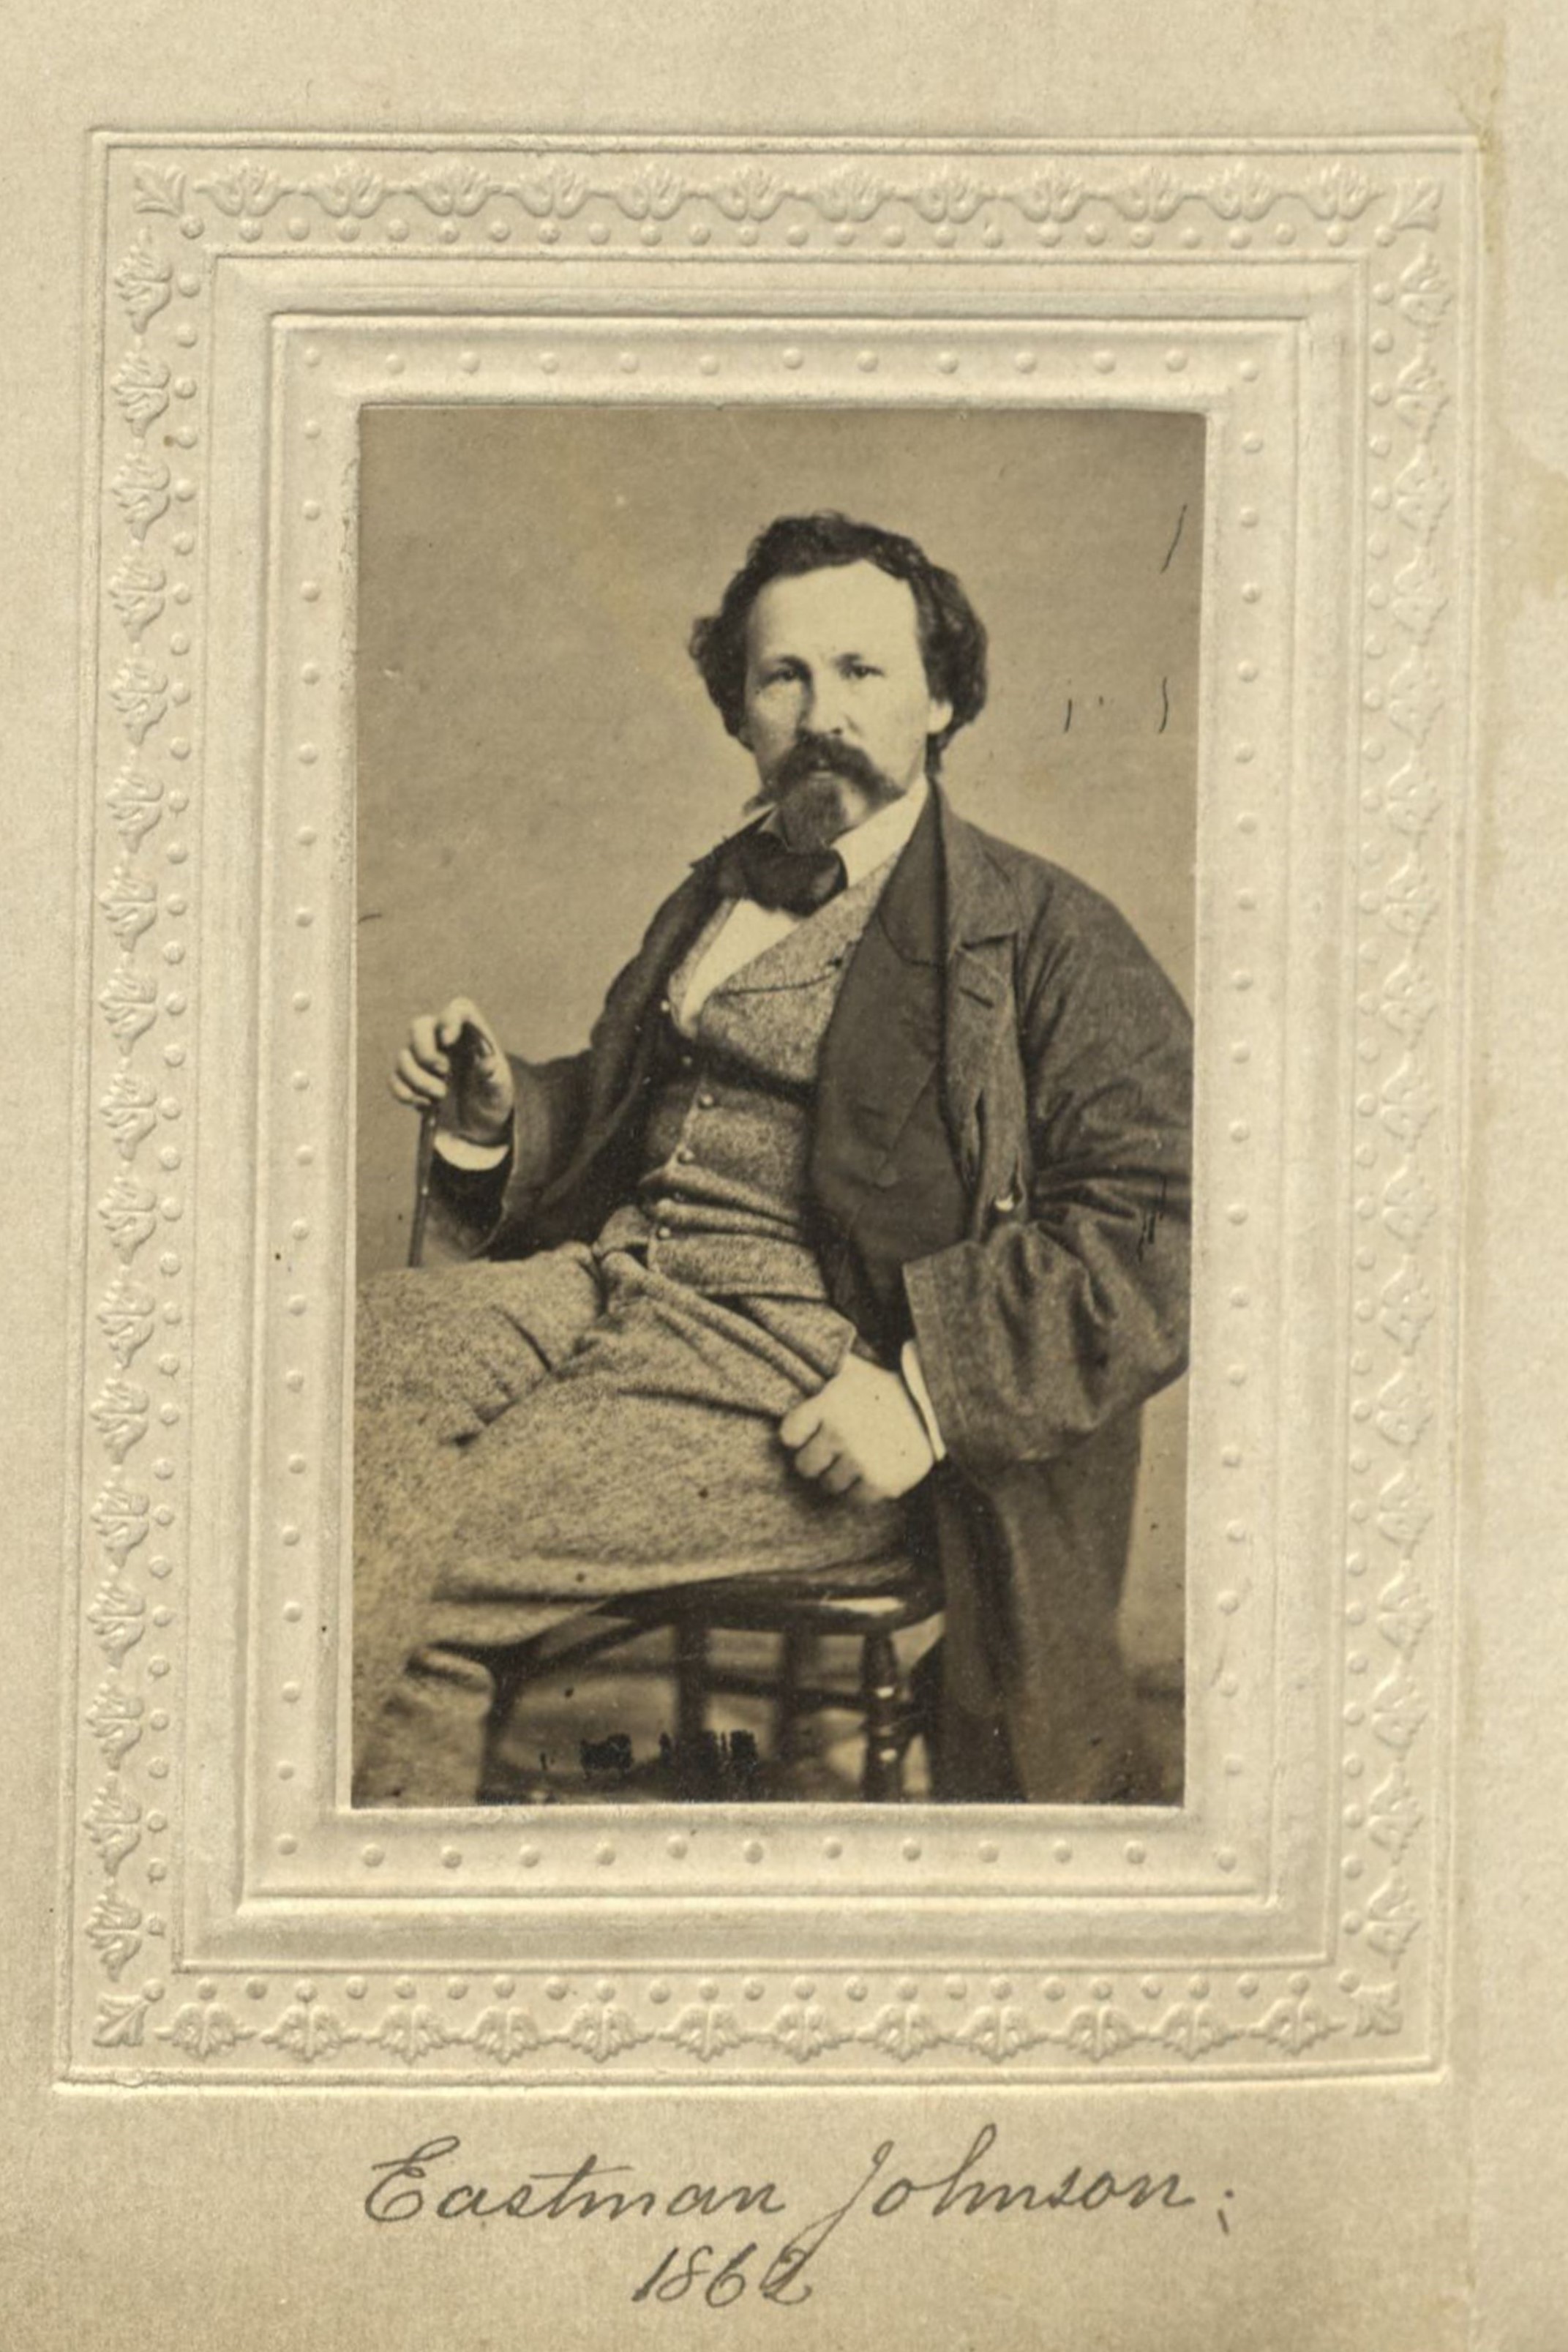 Member portrait of Eastman Johnson